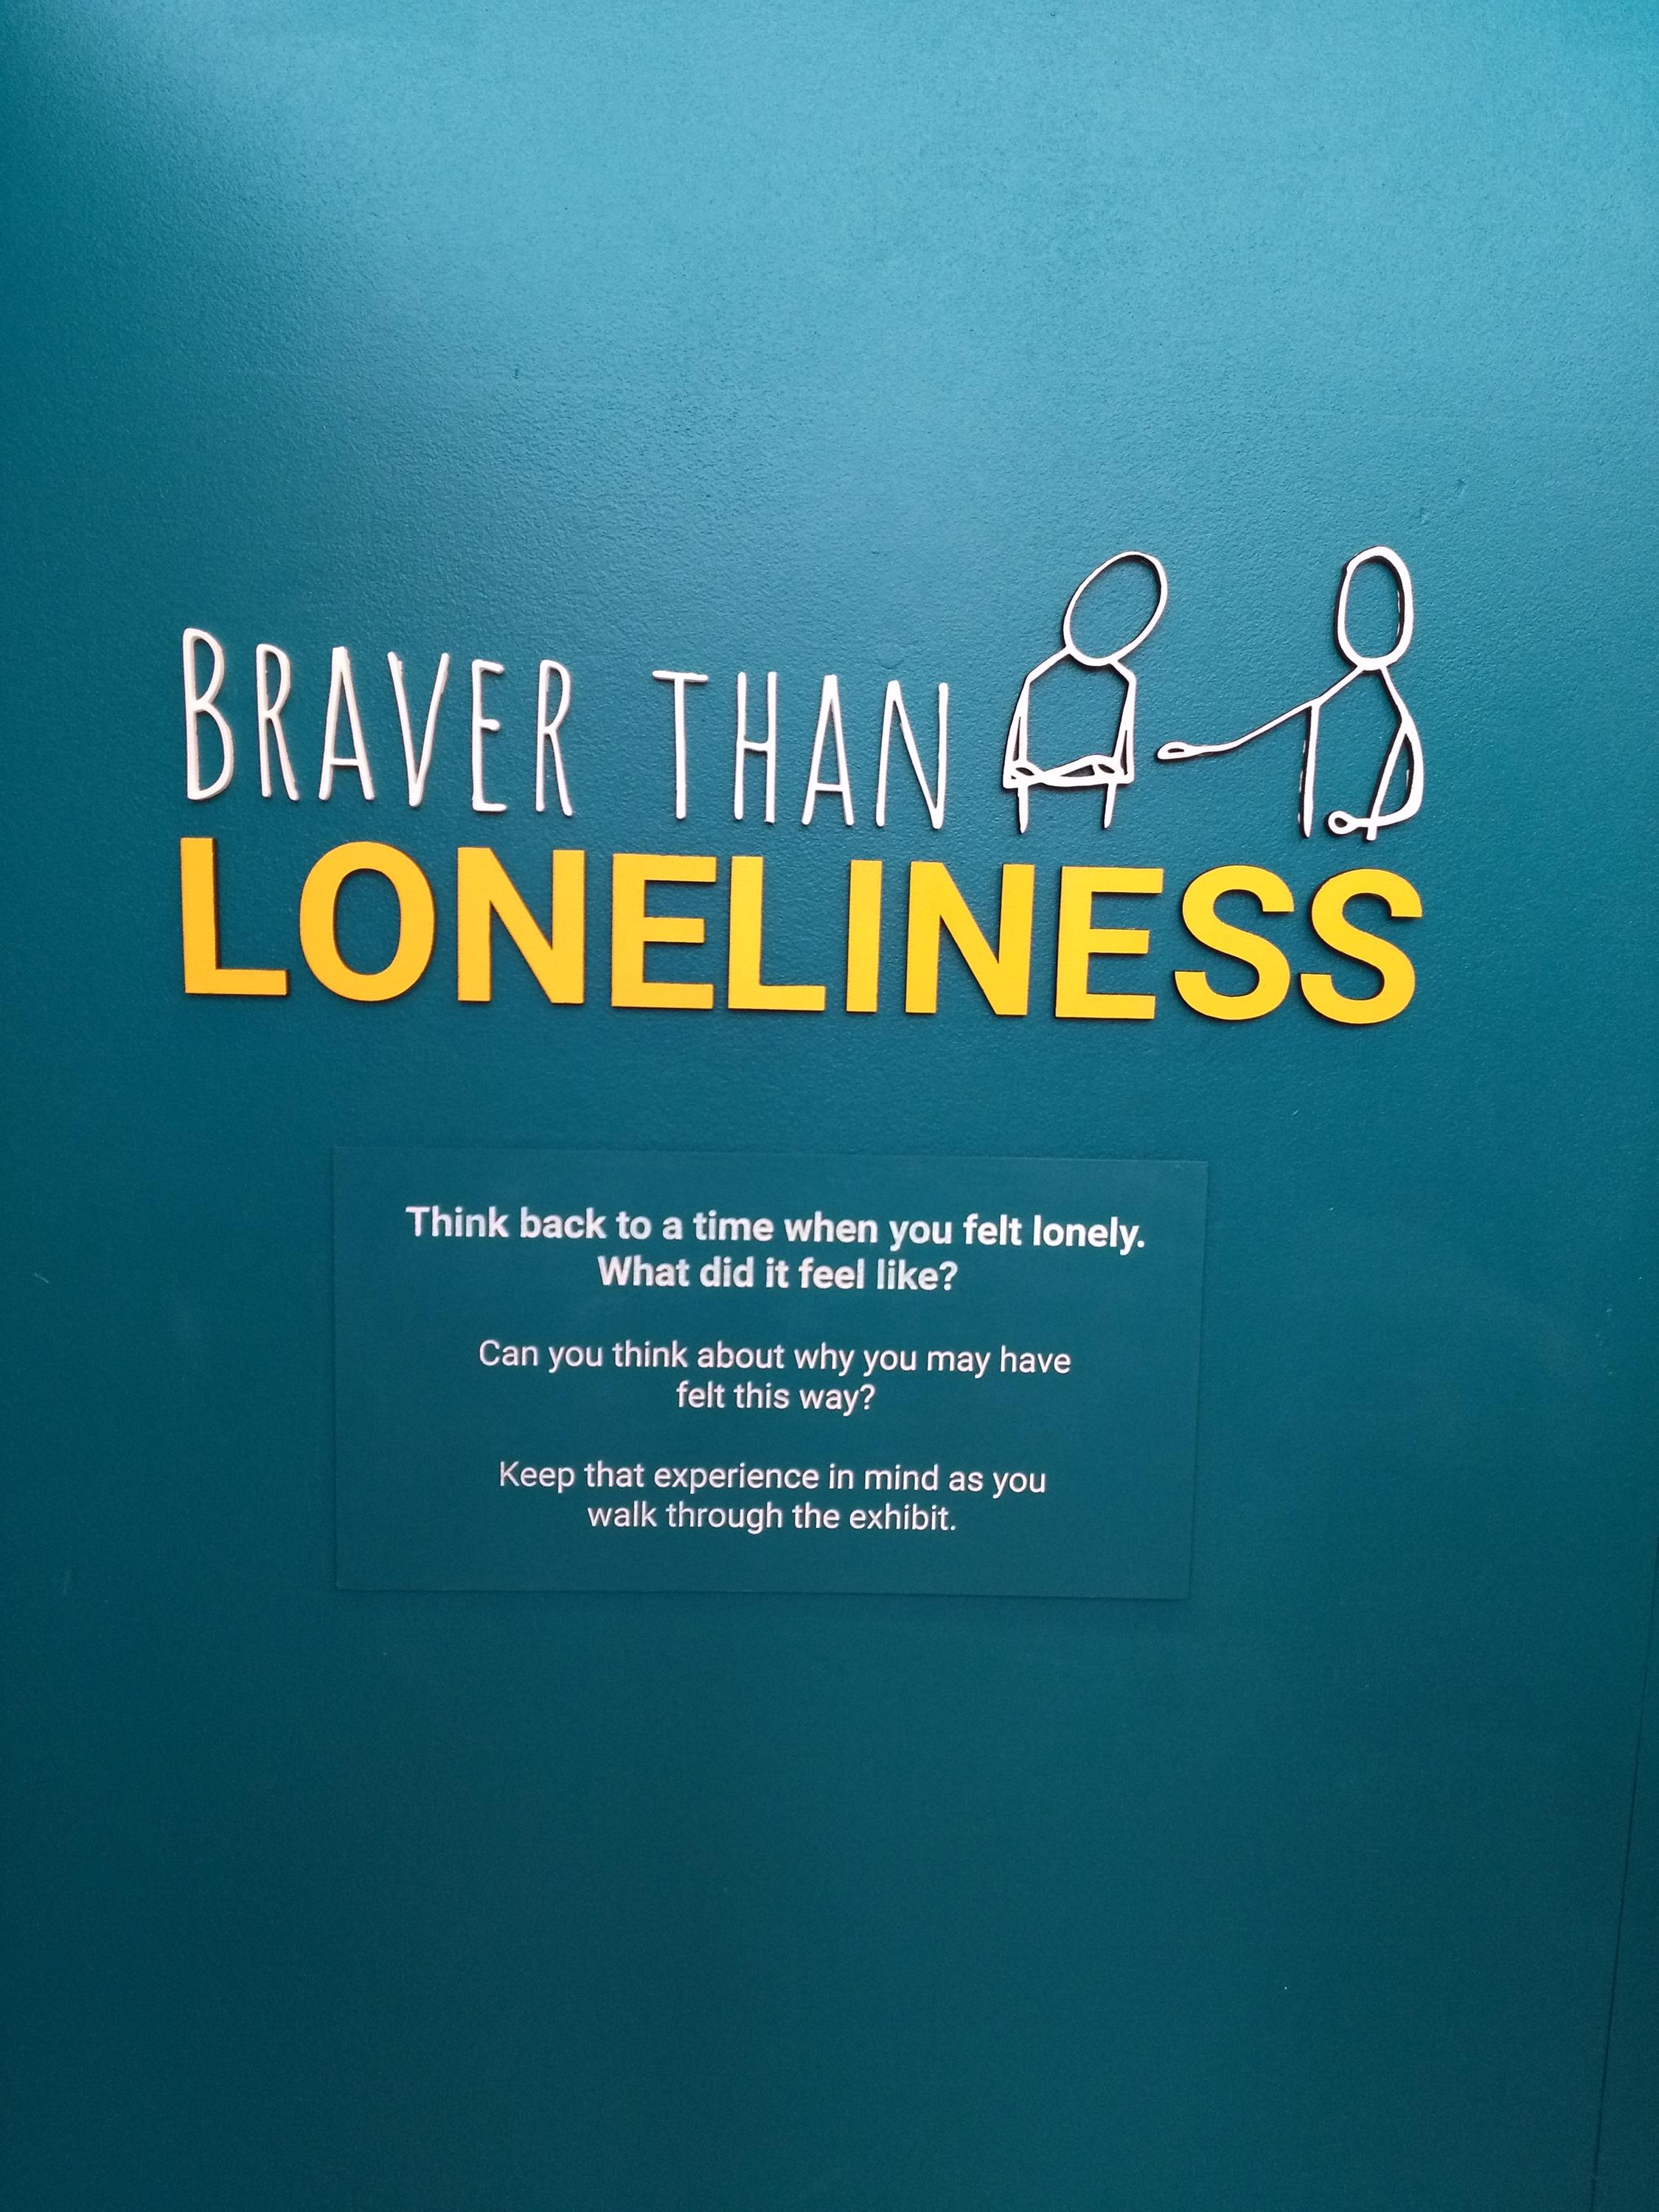 Braver than Loneliness exhibit